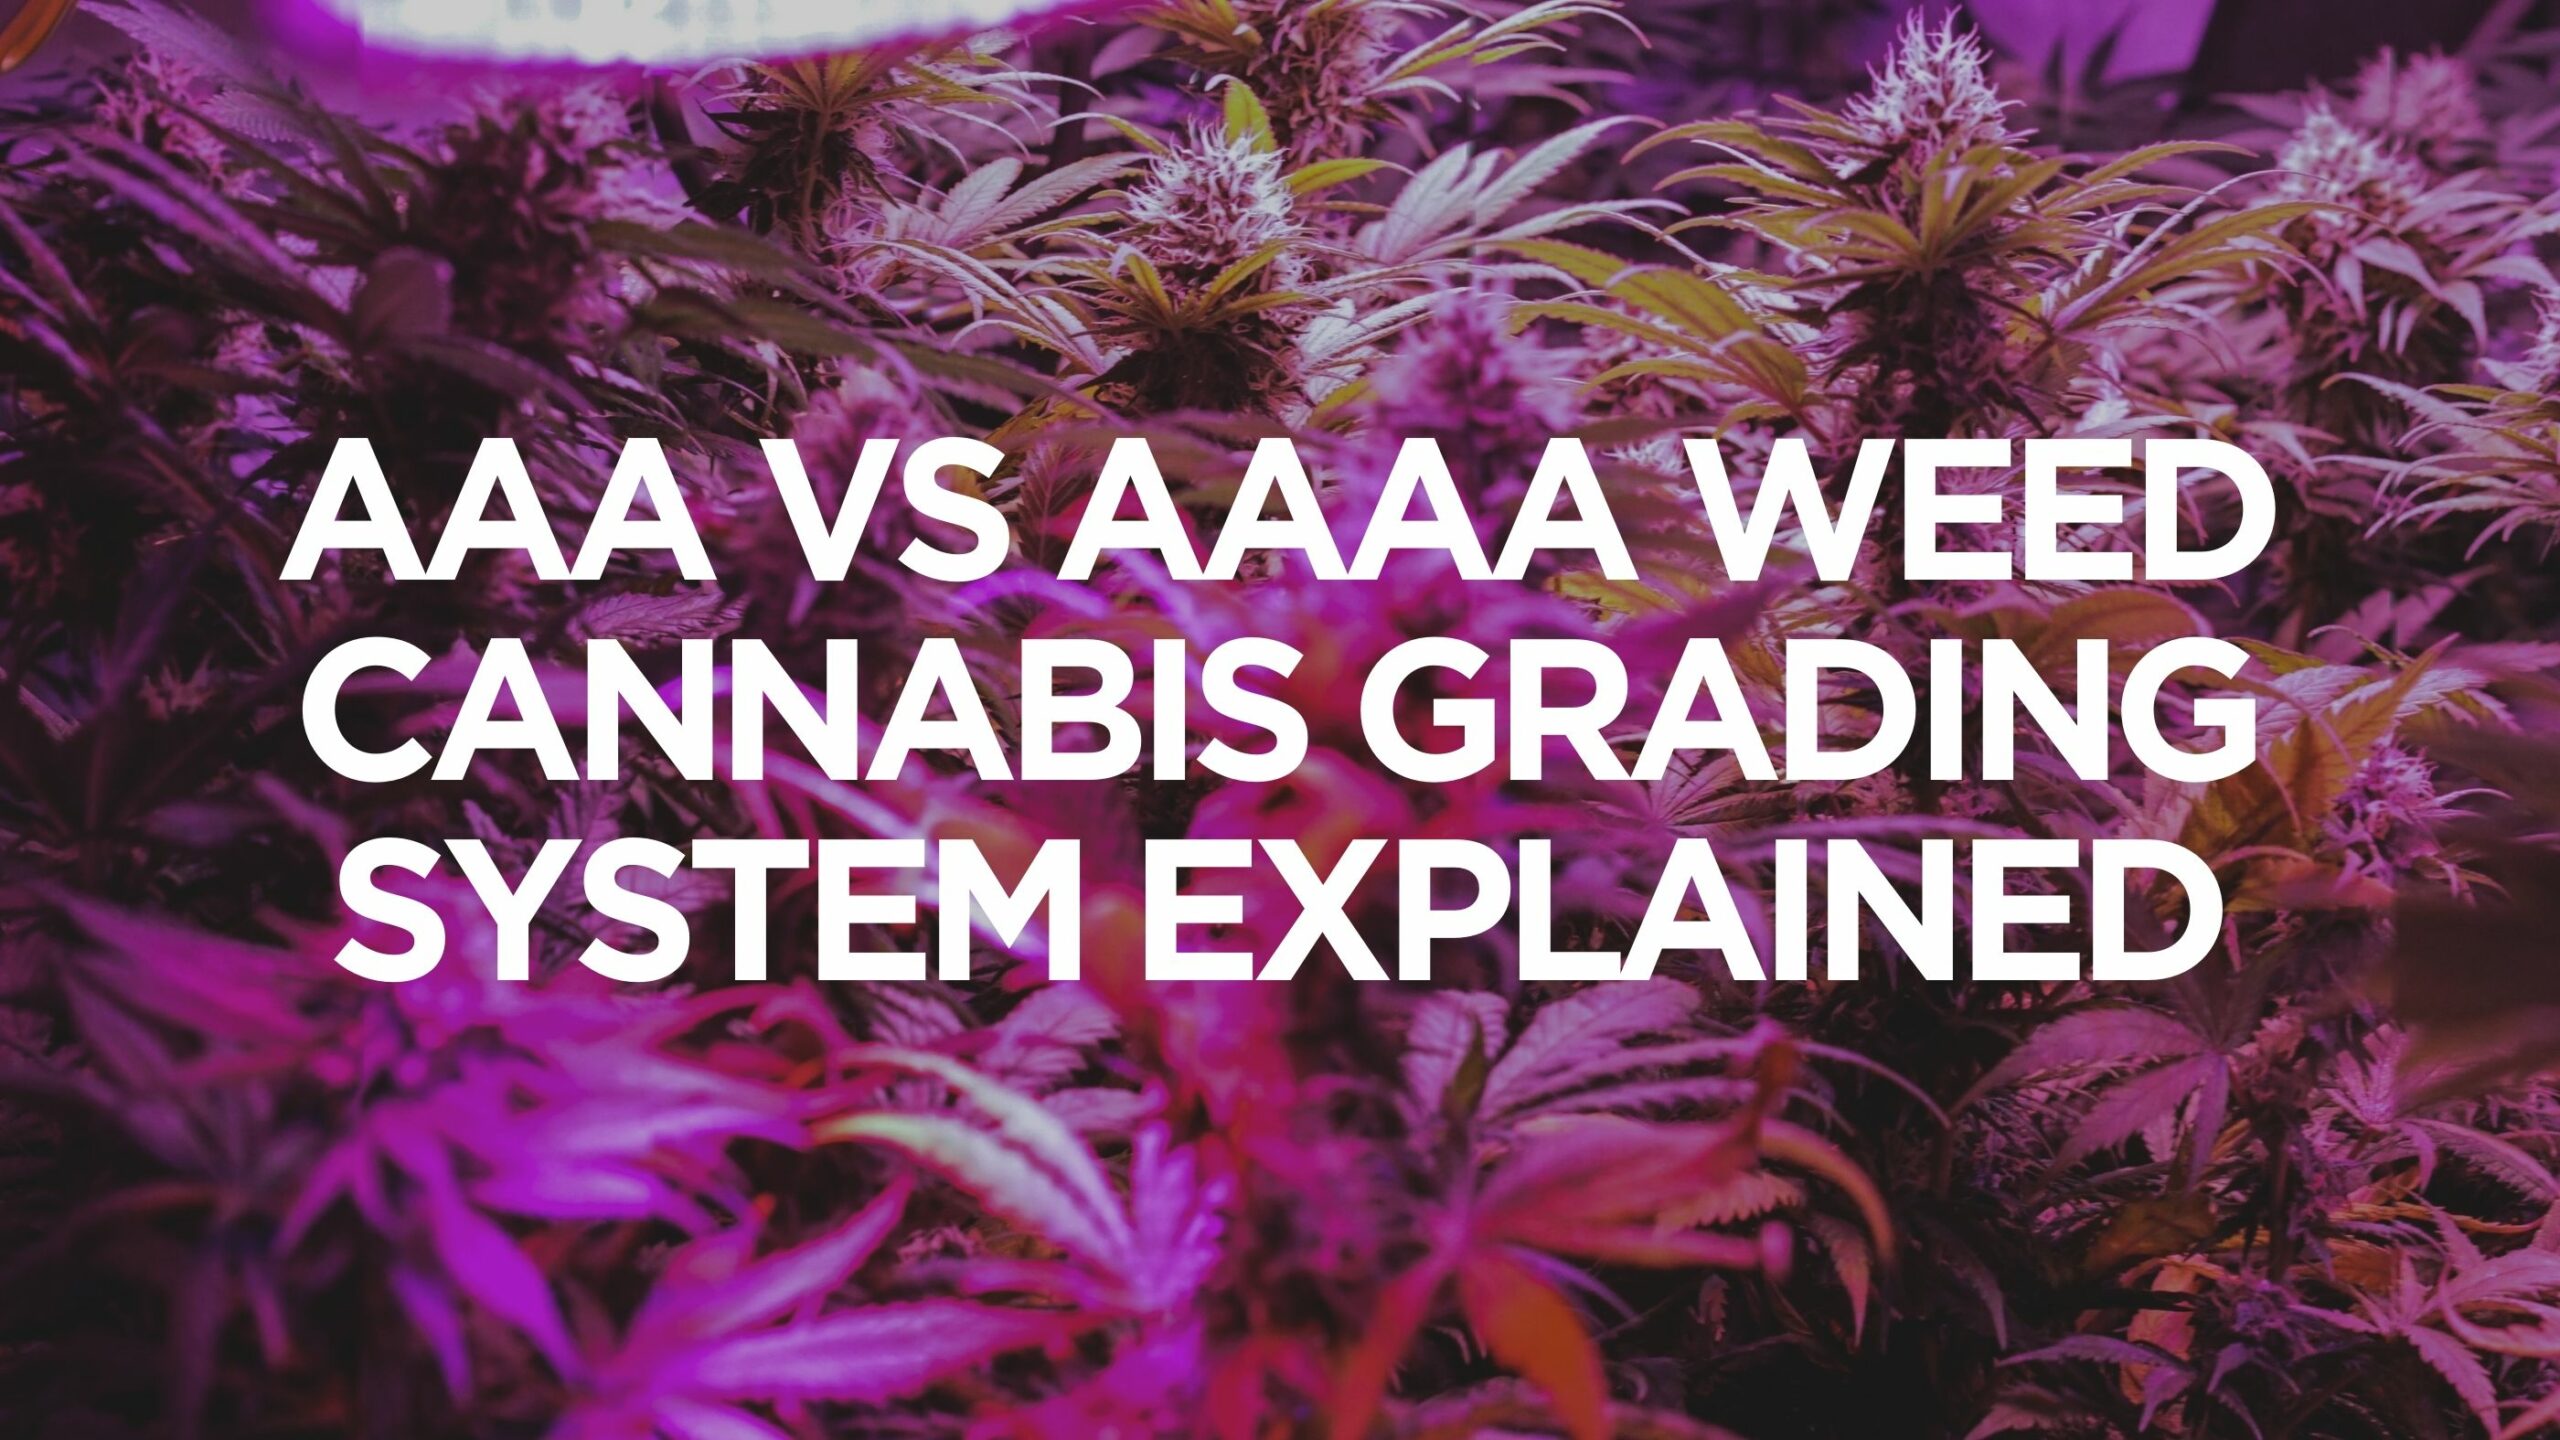 AAA Vs AAAA Weed - Cannabis Grading System Explained - AAA vs AAAA weed -  cannabis grading system explained Ahuevo